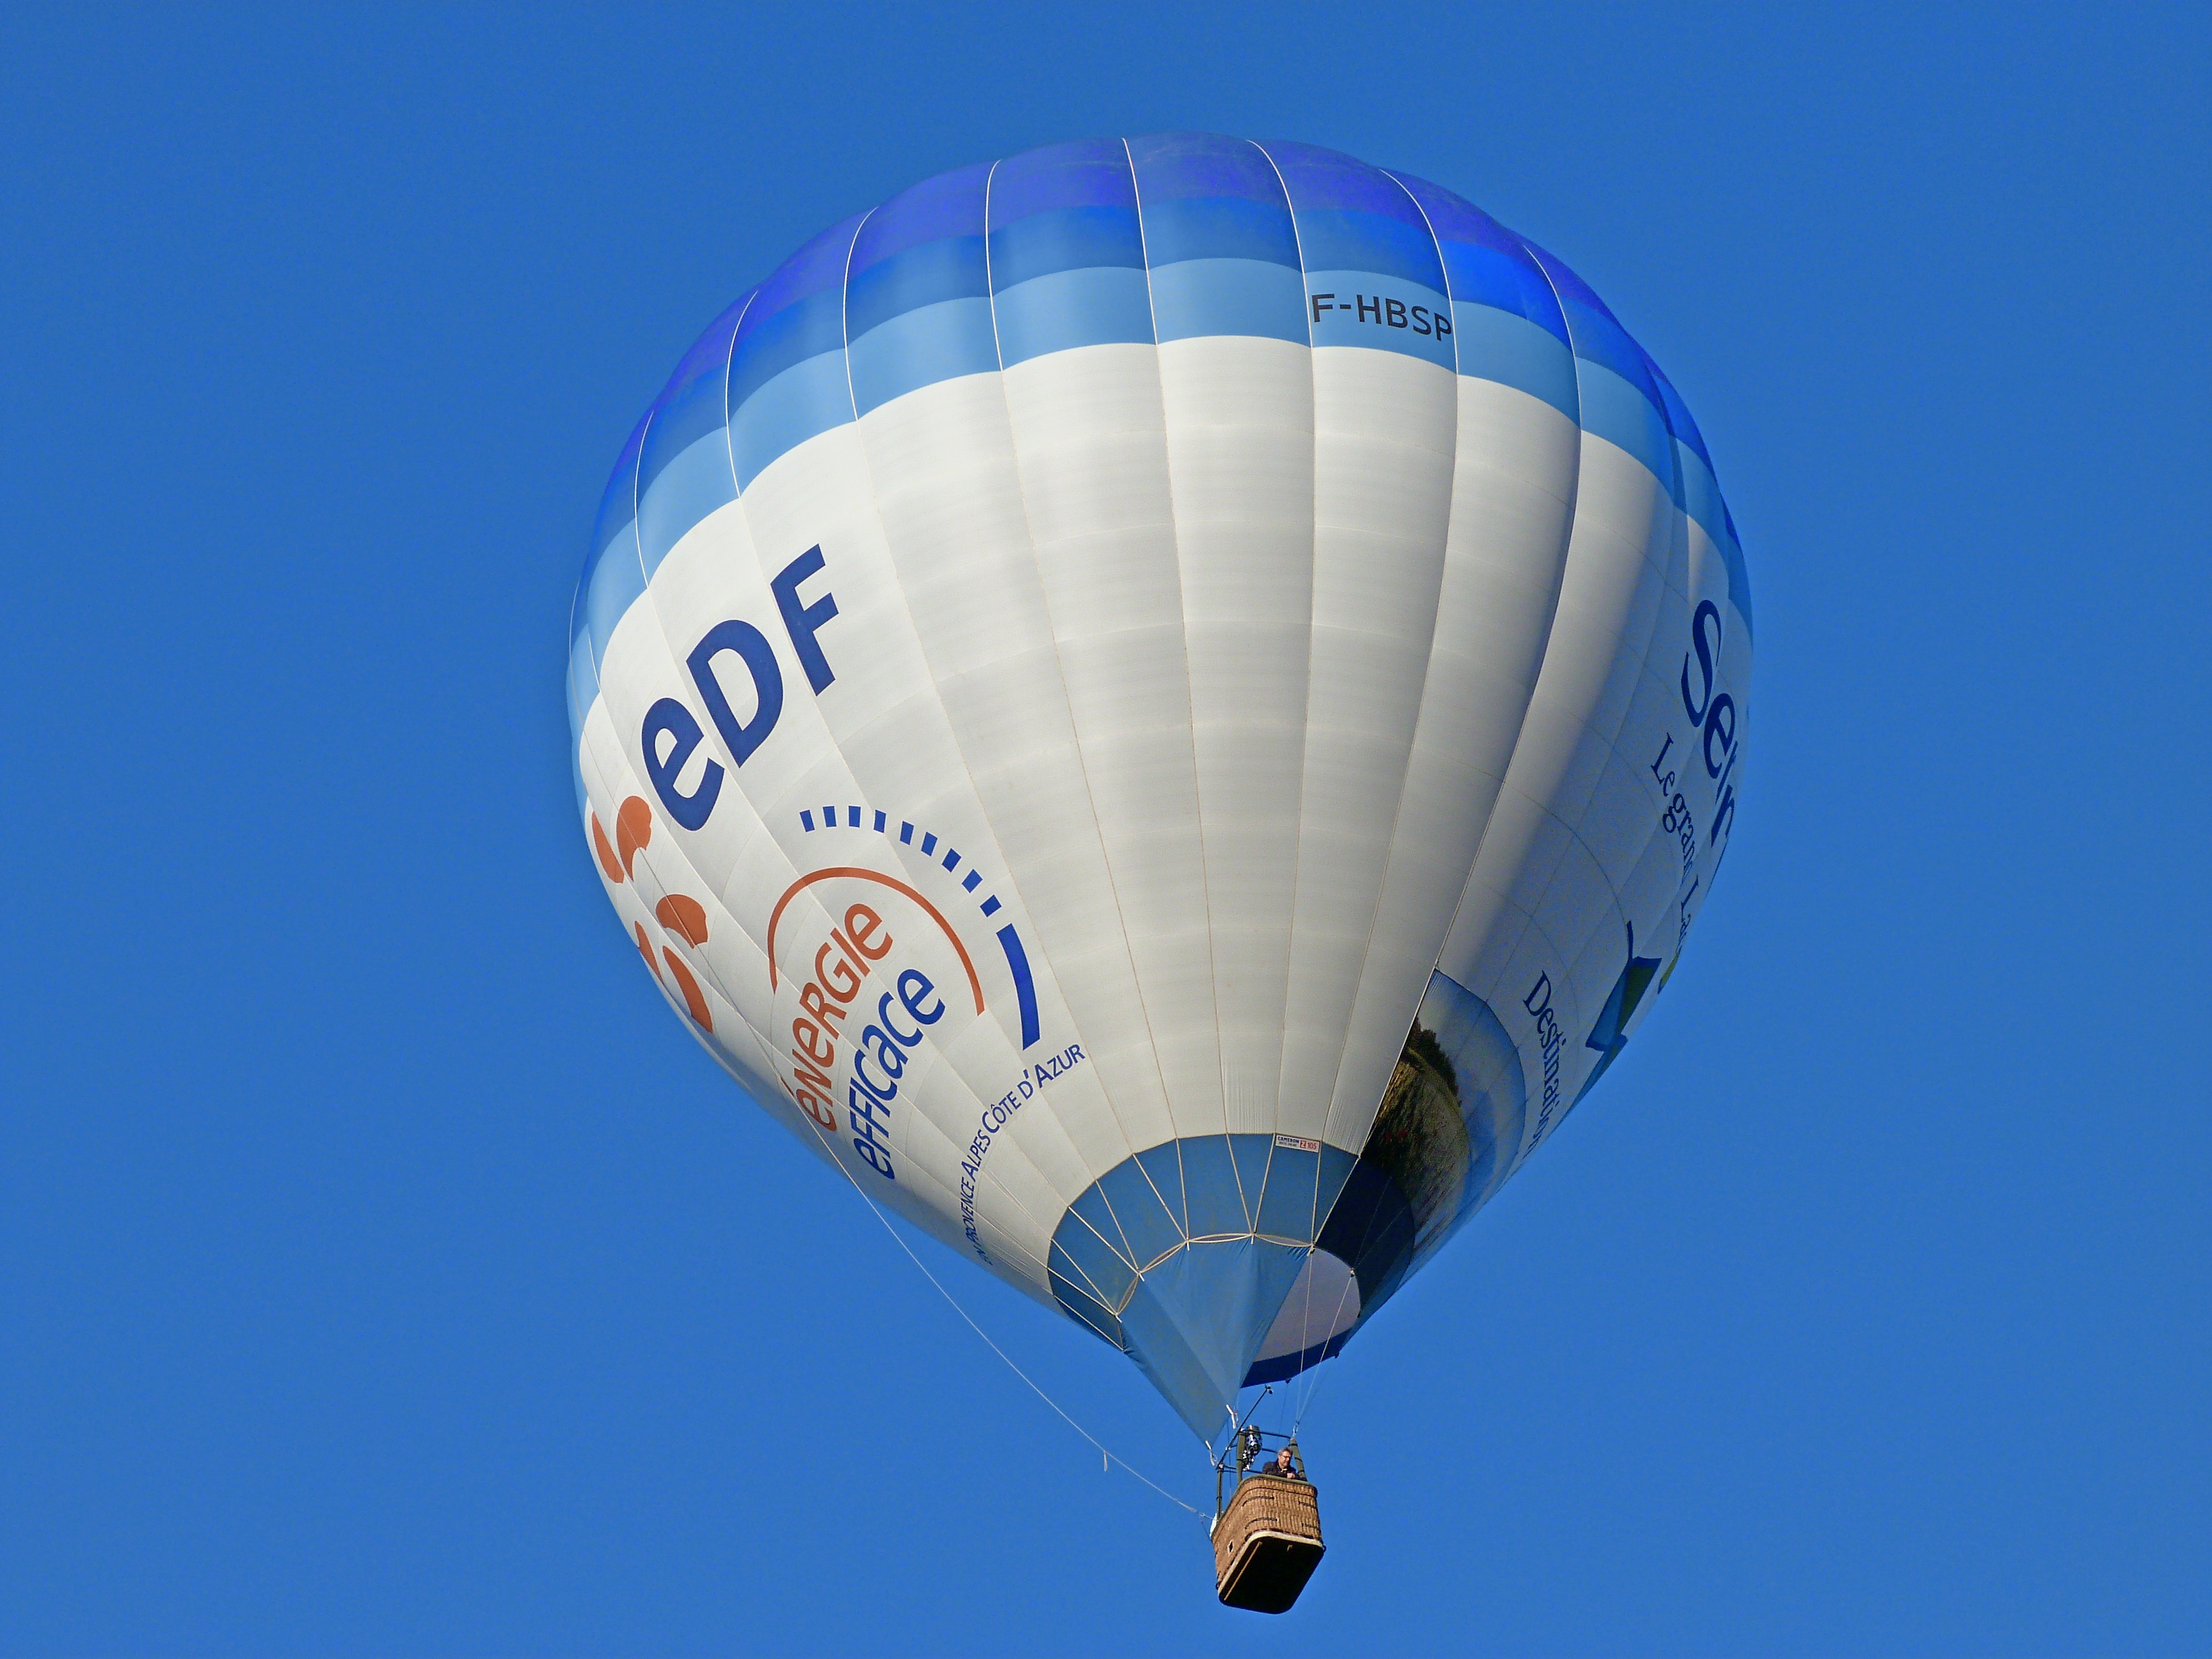 Воздушный шар состоит из оболочки гондолы. Гондола воздушного шара. Воздушный шар "самолет". Ball воздушный шар. Воздушное судно с шаром.